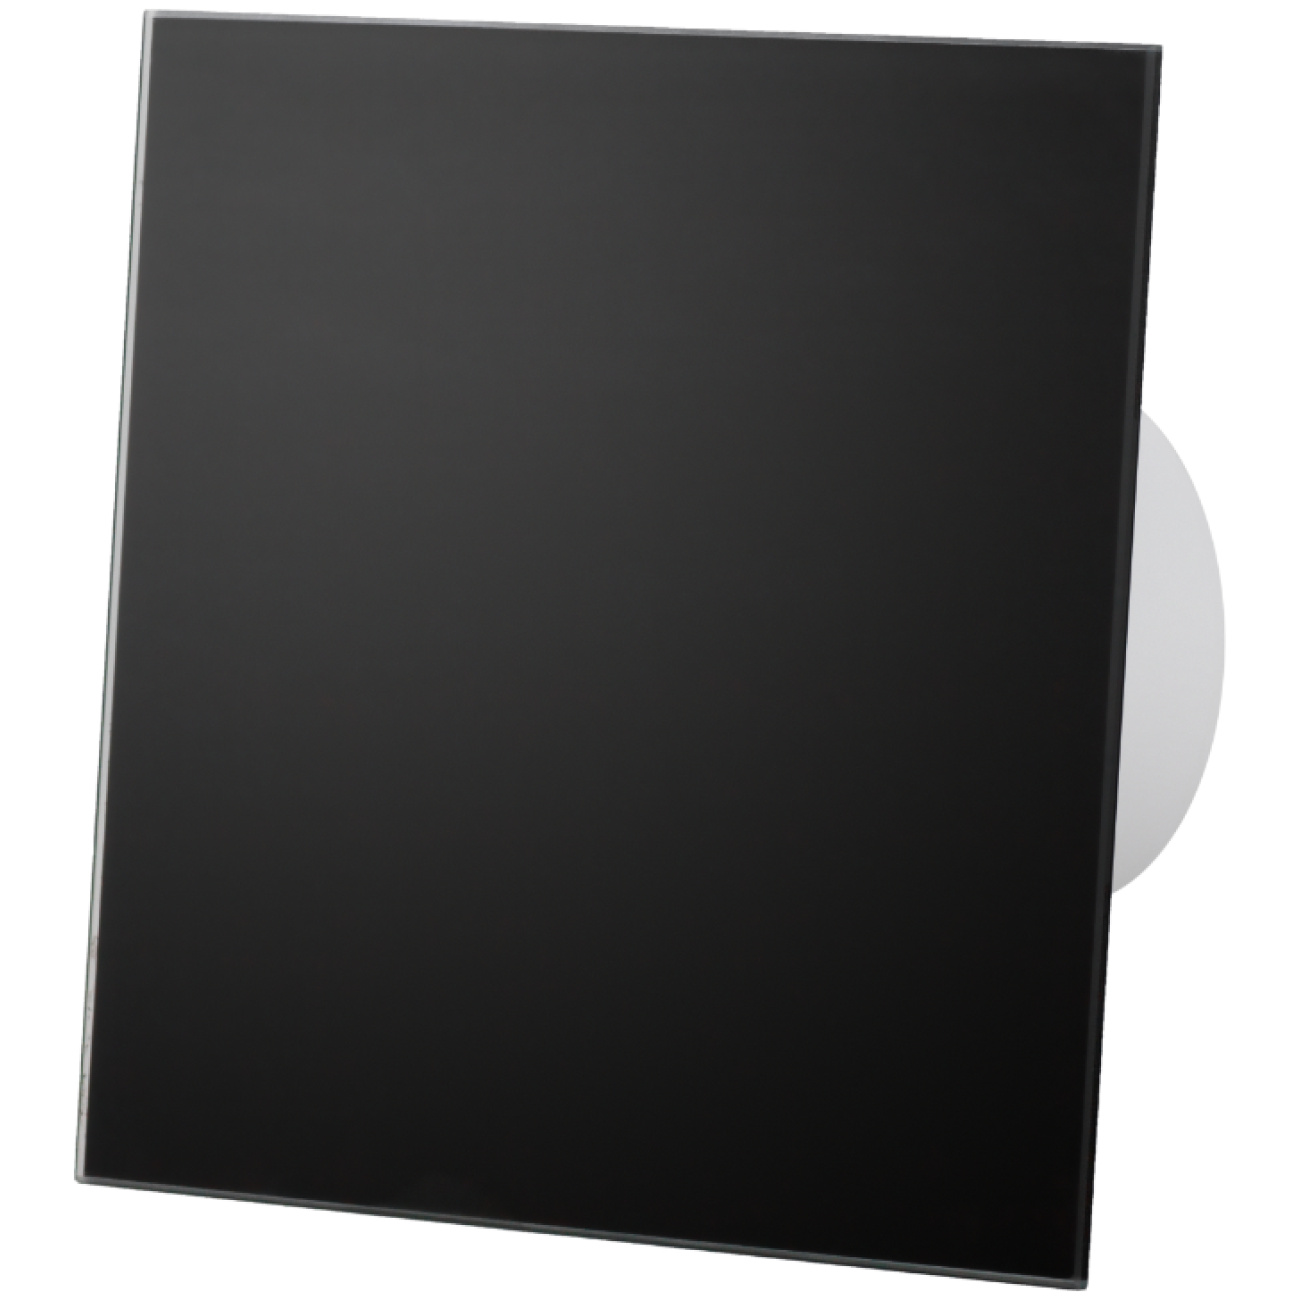 Zestaw: dRim 125 S BB wentylator + Panel szklany czarny mat